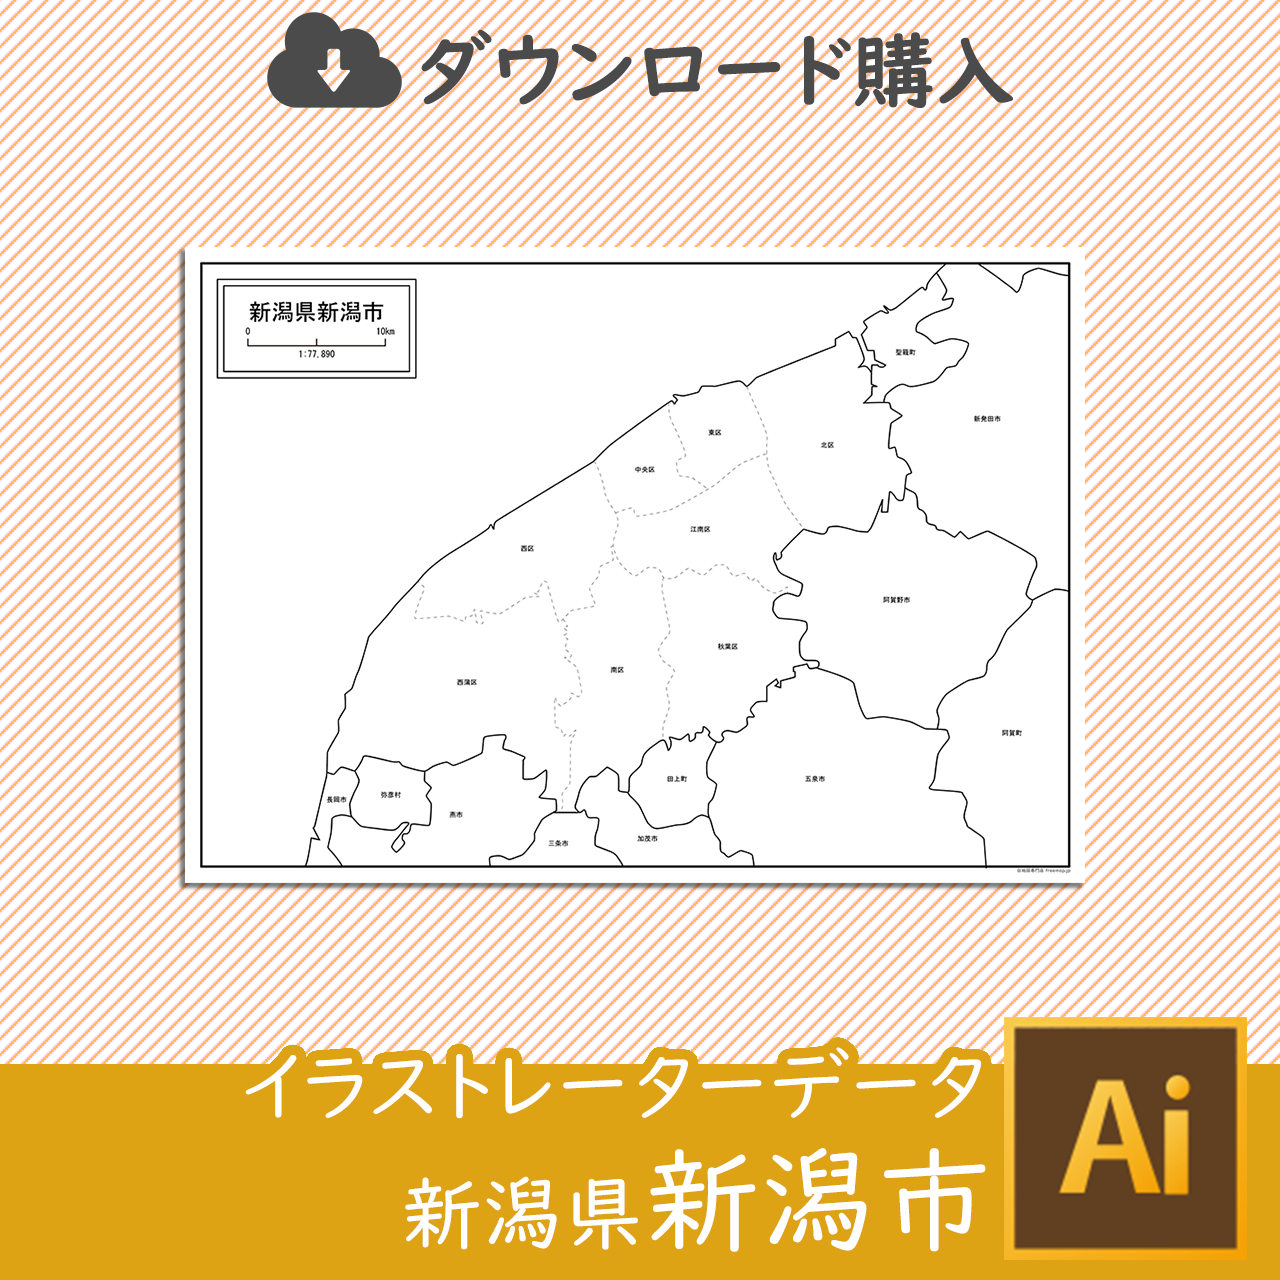 新潟県新潟市のaiデータのサムネイル画像